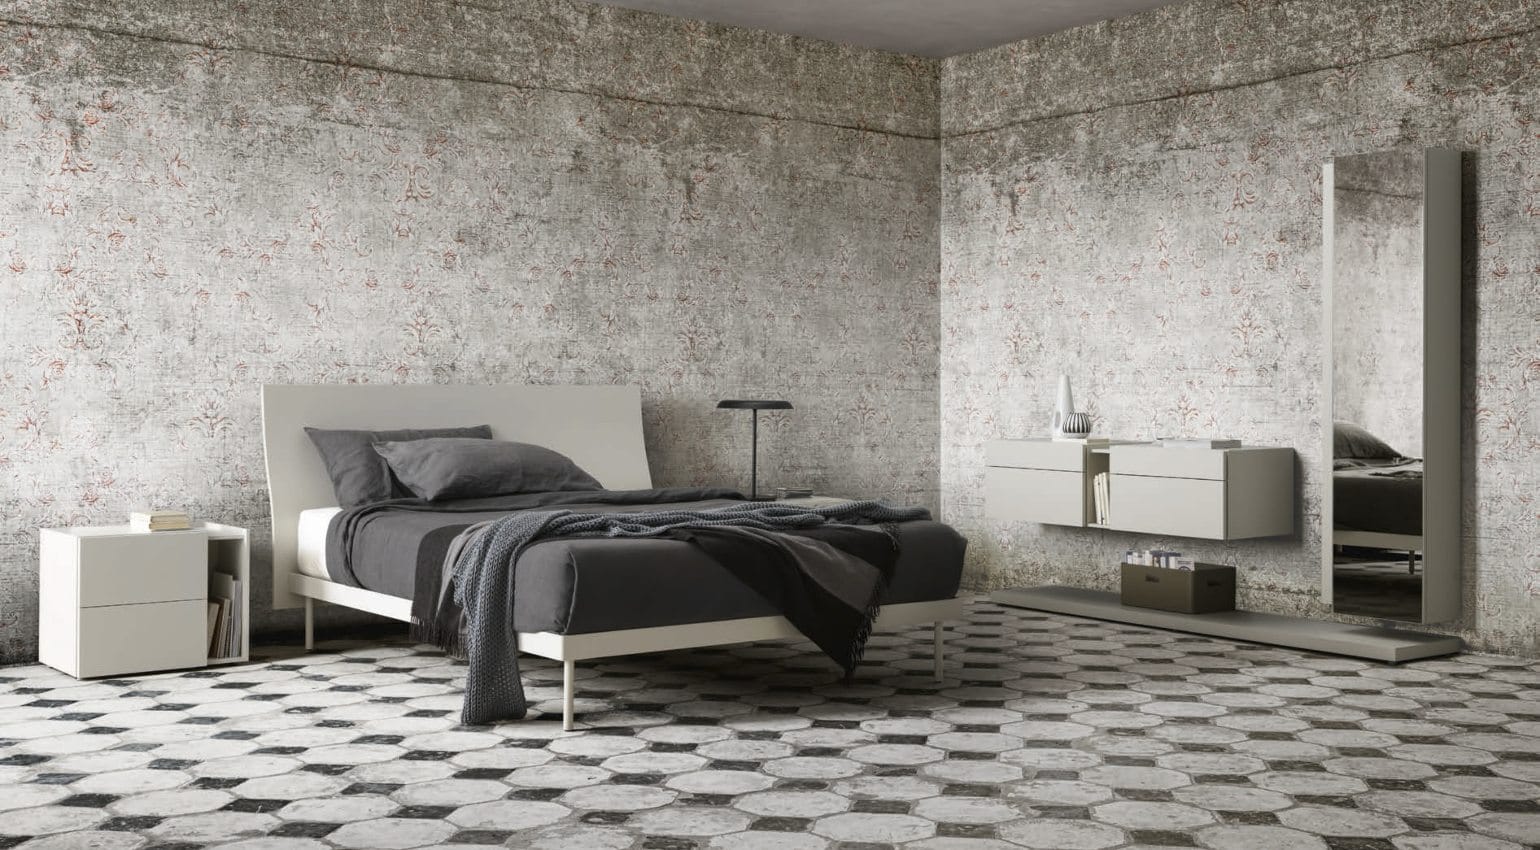 Elegante y refinada cama de diseño italiano con cabecera curvada en forma de S